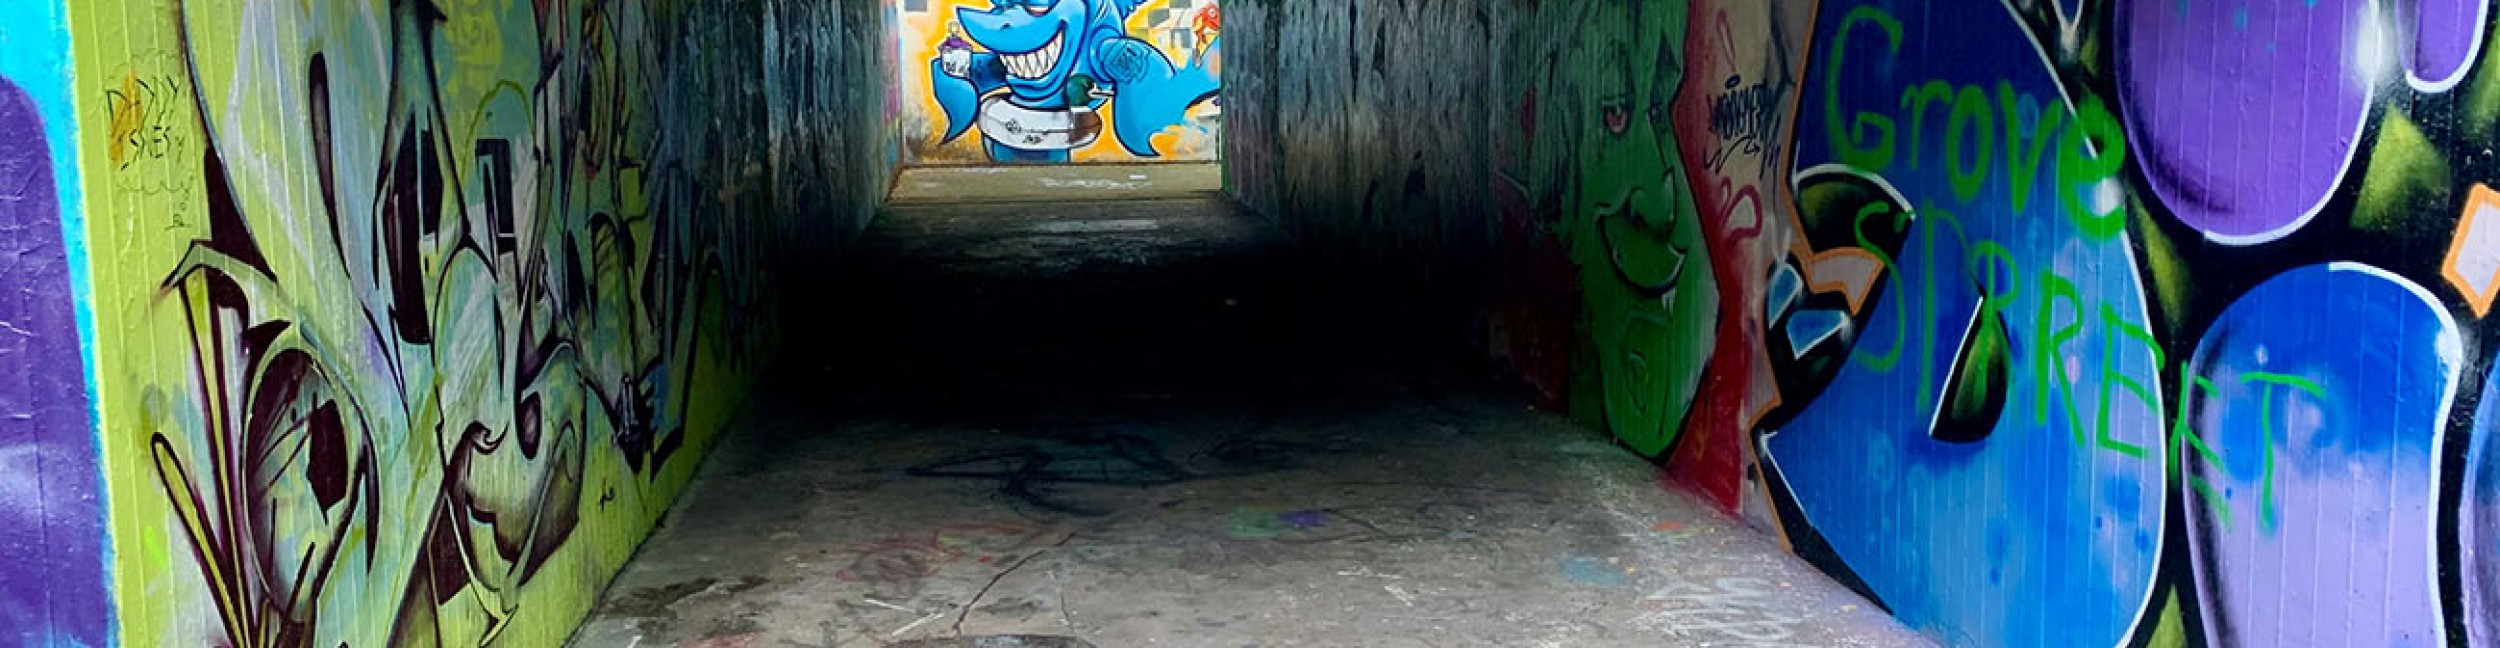 Passage souterrain avec des graffitis colorés sur les murs - lettres, visage vert, requin bleu avec une bouée